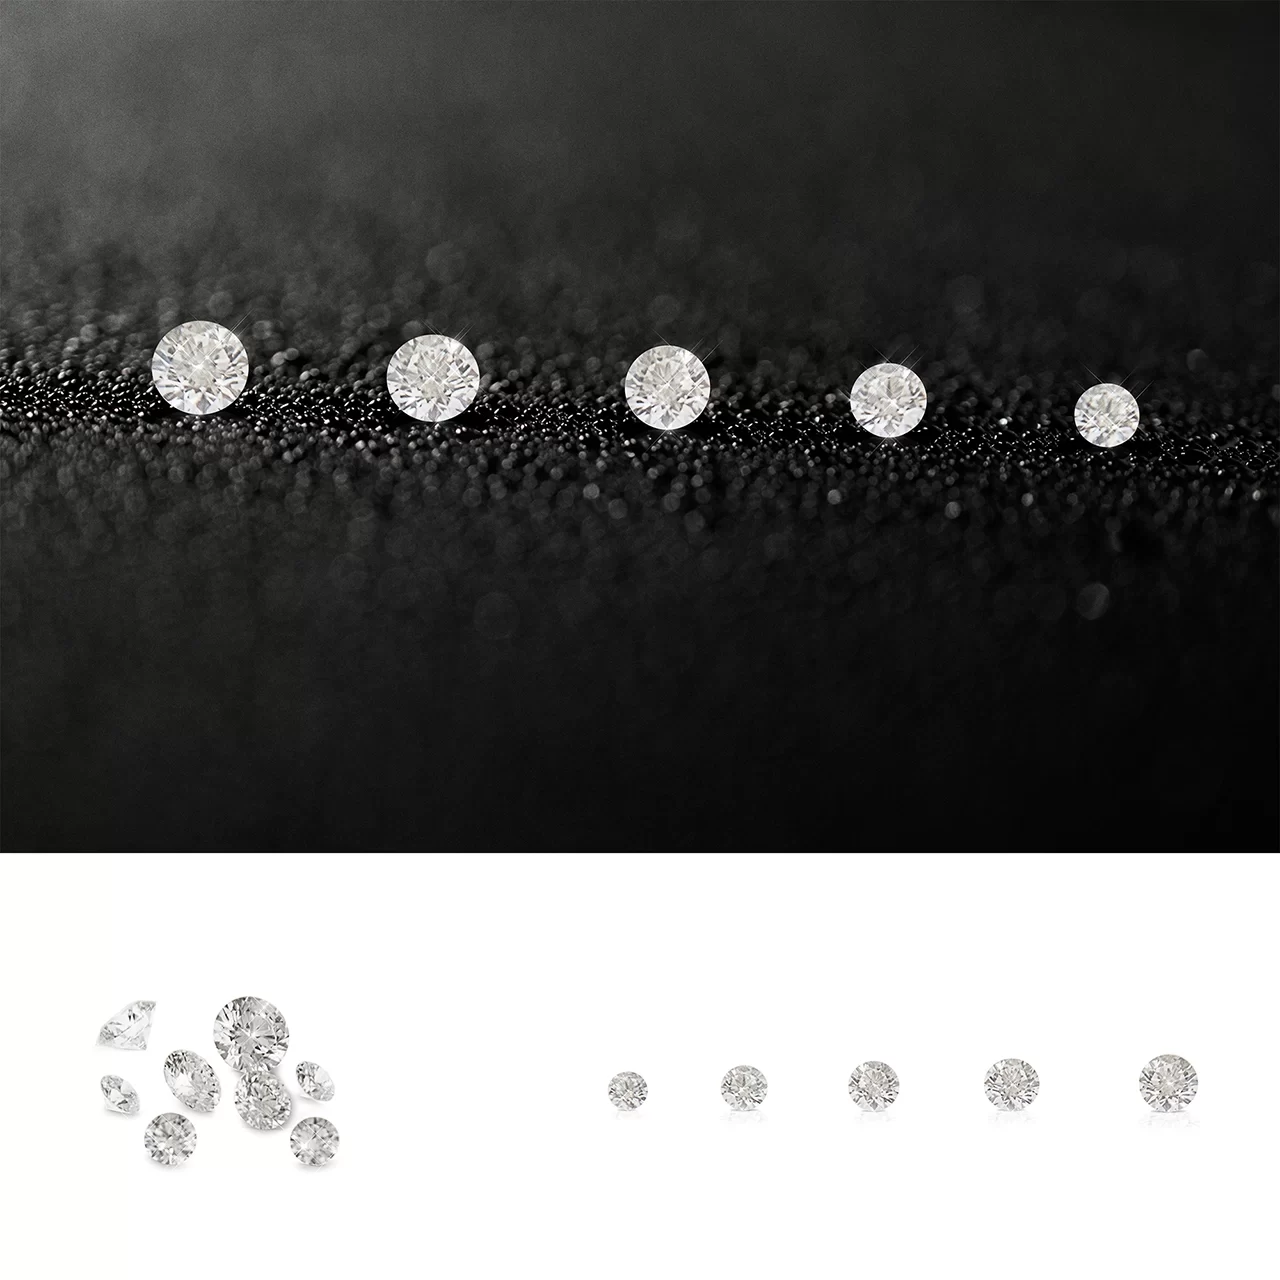 ένα πλάνο με σειρά διαμαντιών σε διαφορετικά μεγέθη σε μαύρο φόντο ένα πλάνο με μια χούφτα διαμάντια και το τελευταίο πλάνο με σειρά διαμαντιών σε διάφορα μεγέθη